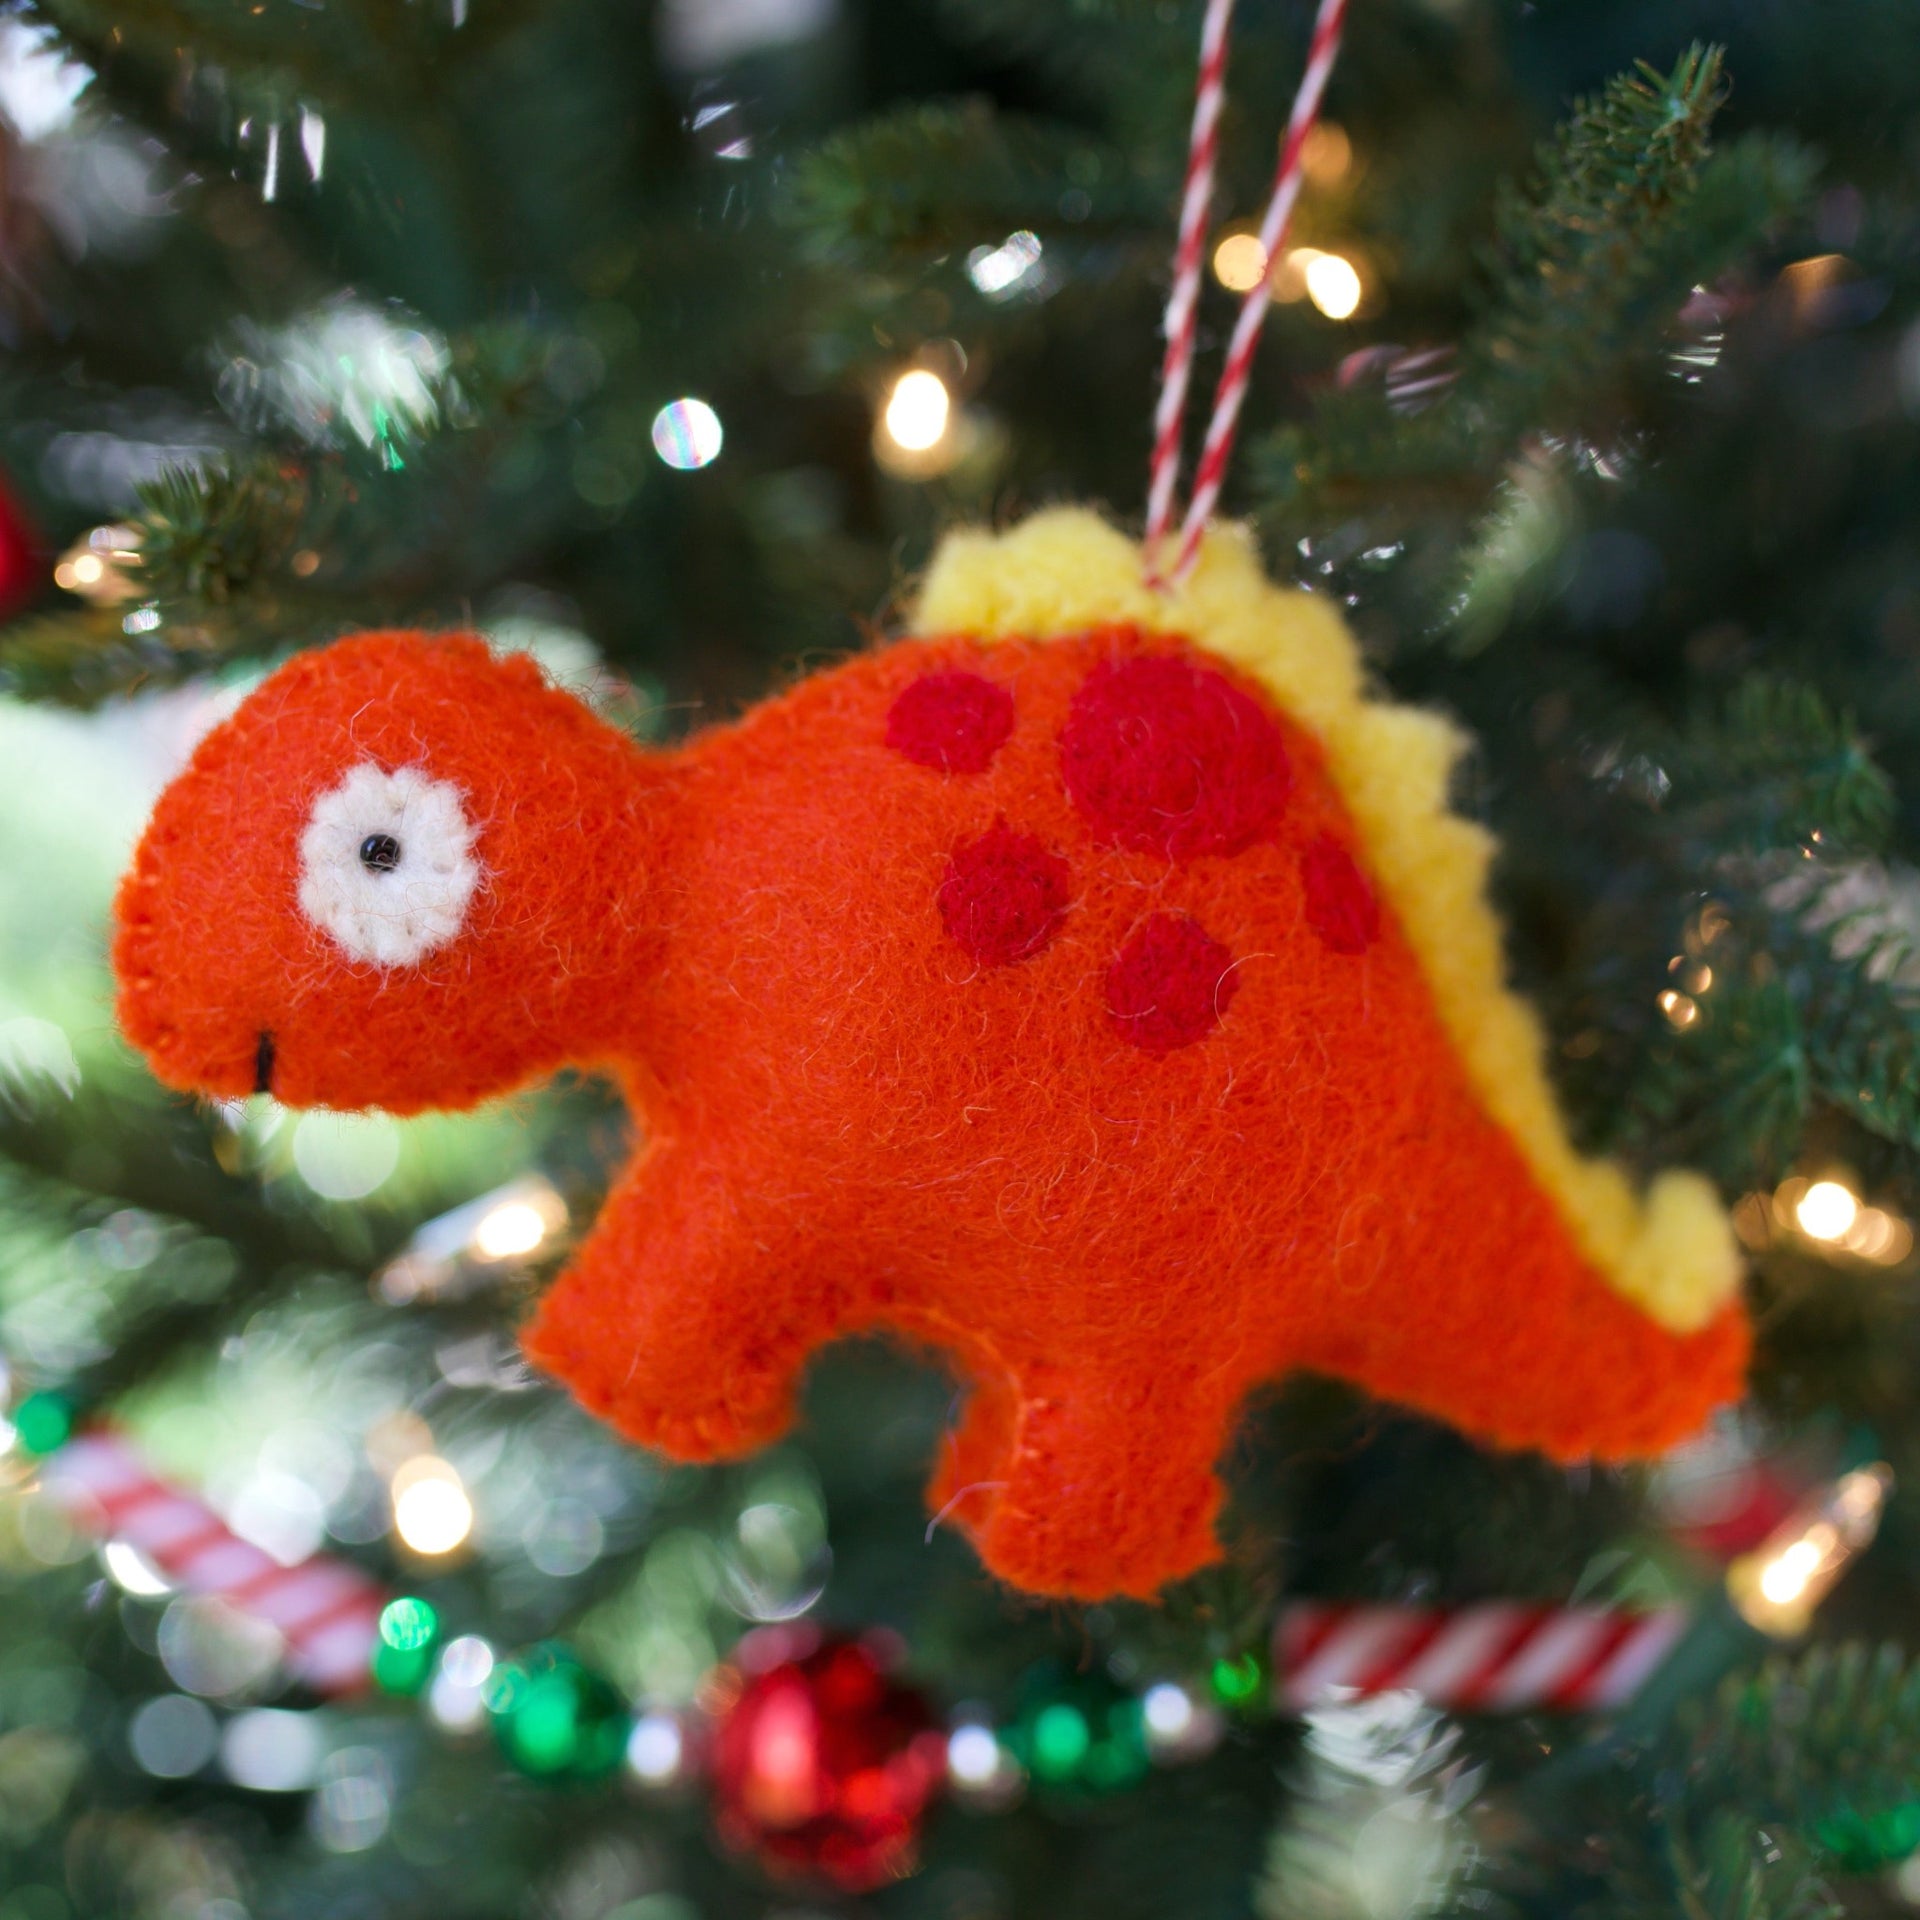 Orange Dinosaur Ornament on Christmas Tree